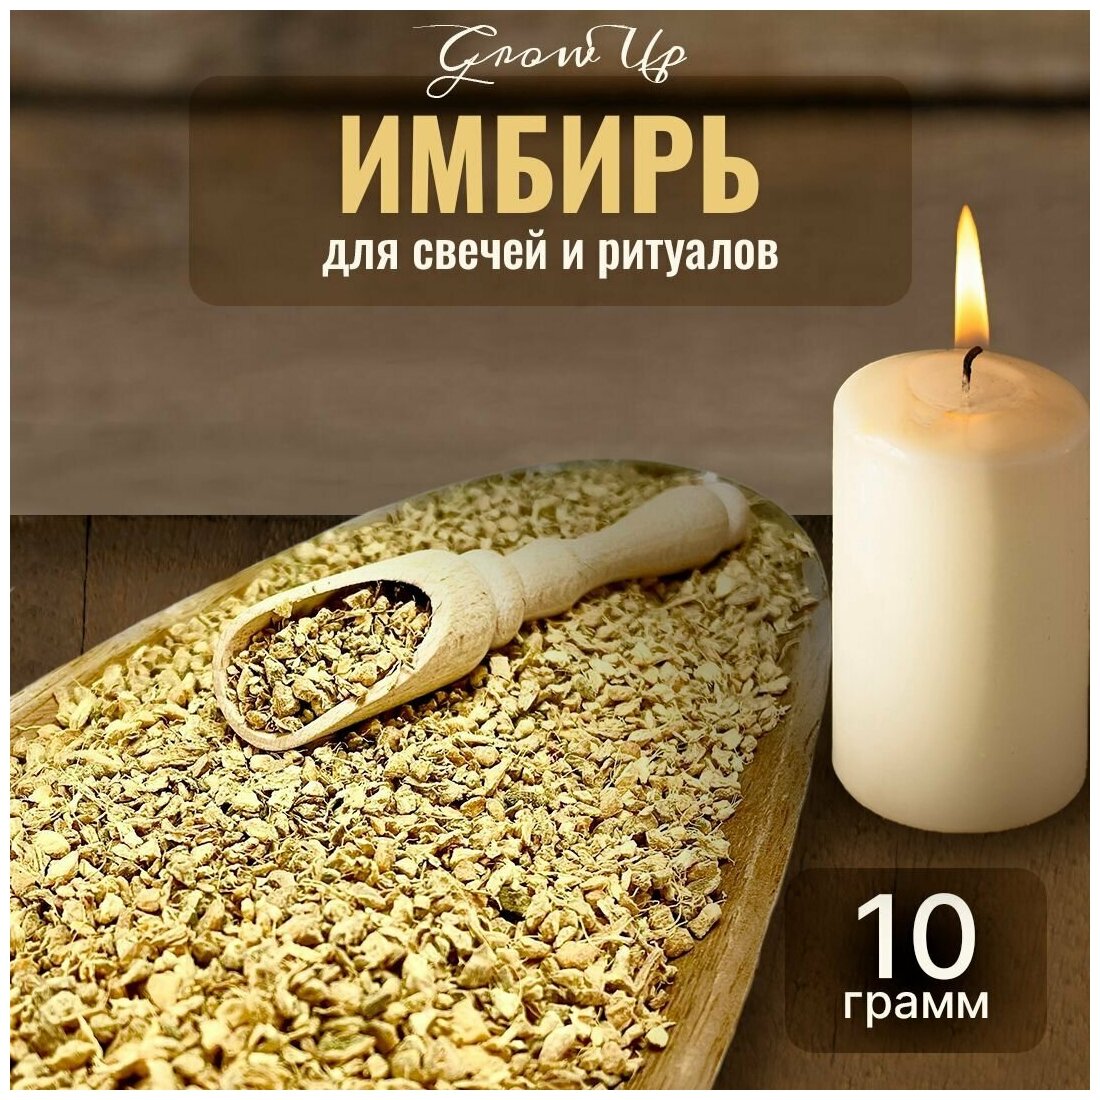 Сухая трава Имбирь мелкий (корень) для свечей и ритуалов, 10 гр